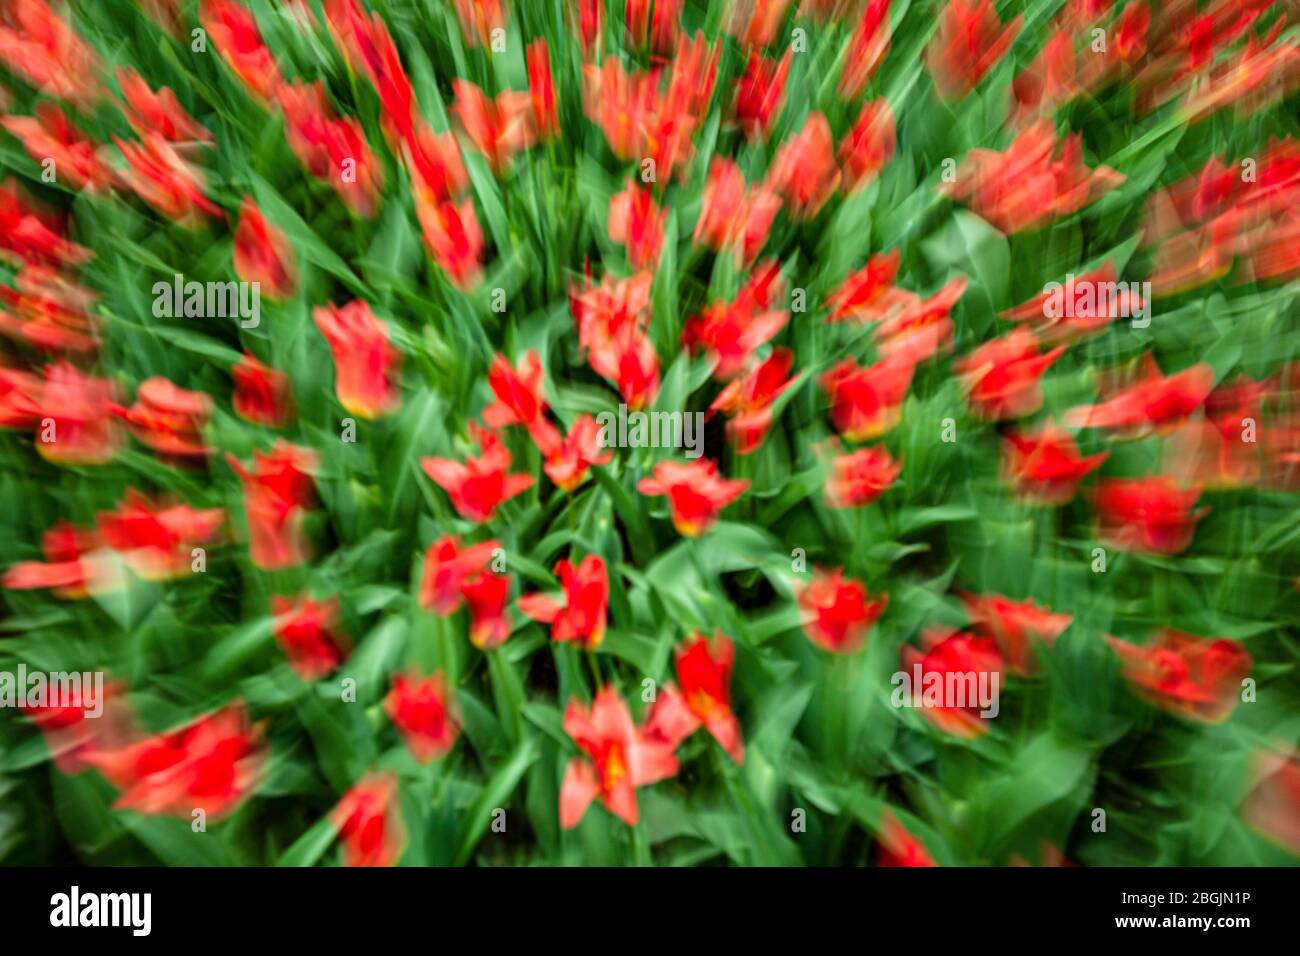 Red tlips, blurred, Keukenhof Gardens, near Lisse, Netherlands Stock Photo